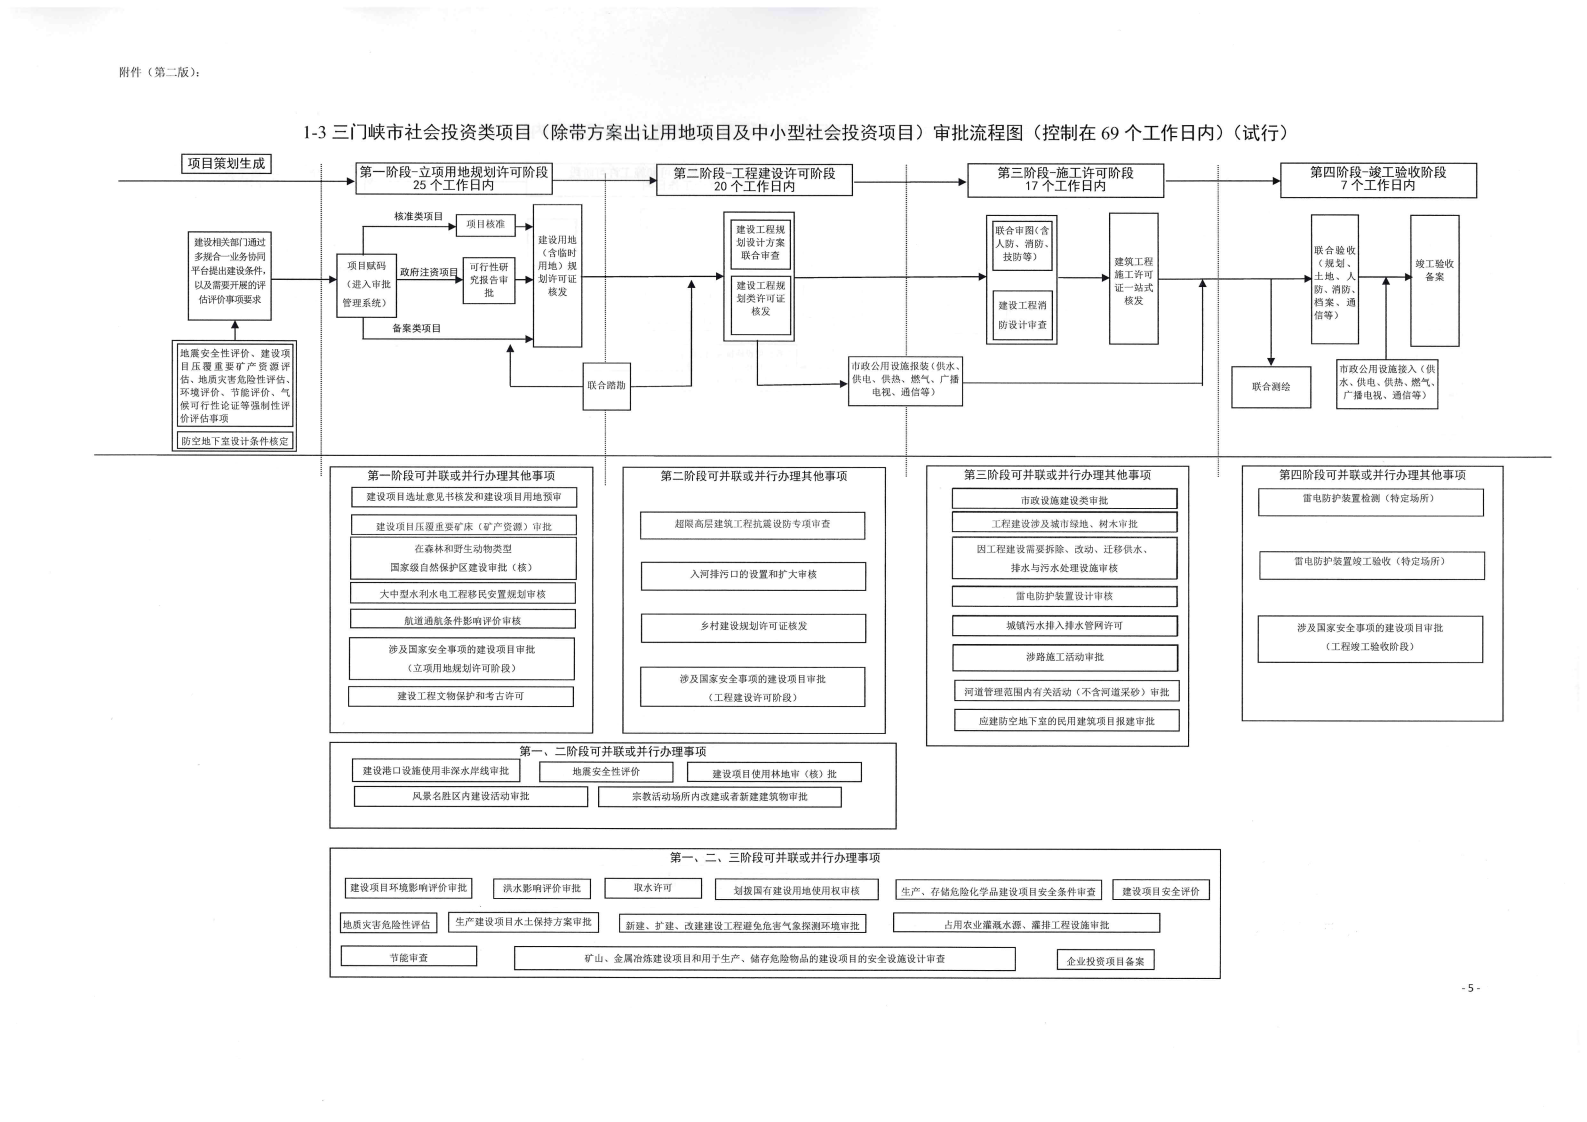 《, . 《三门峡市政府投资房屋建筑类项目审批流程图》（试行）等9类流程图的通知